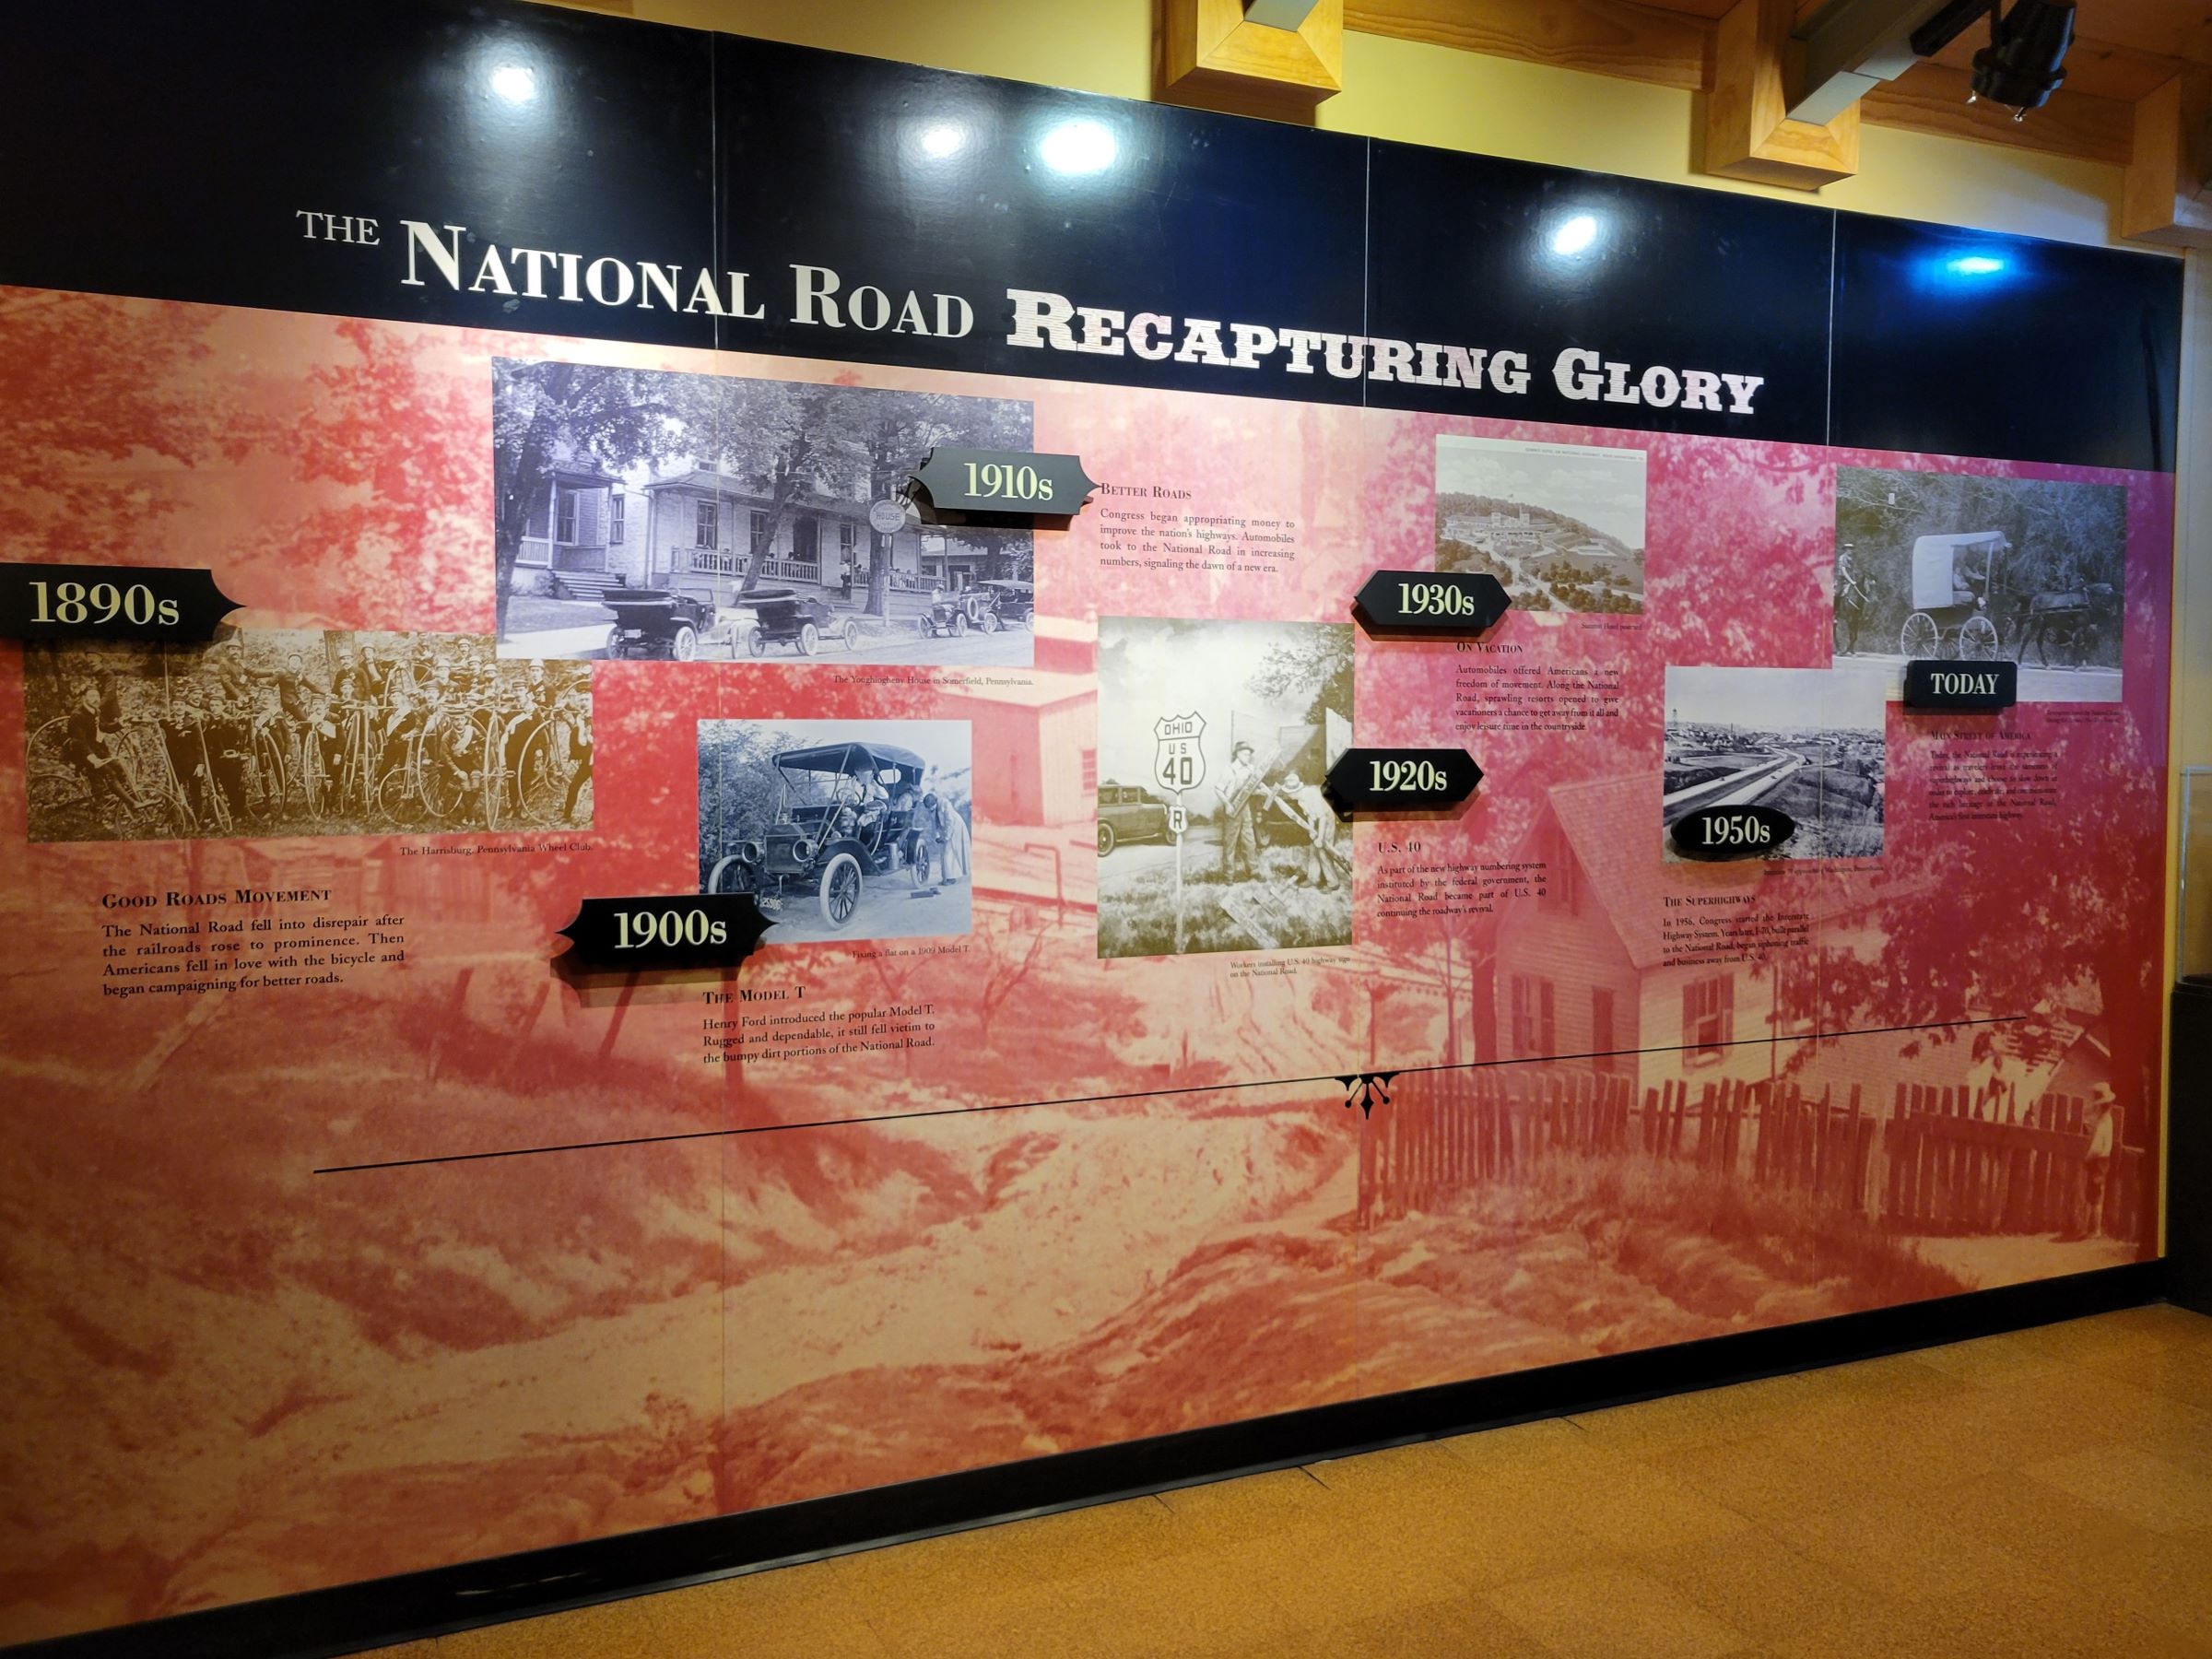 워싱턴이 항복했던 포트너세서티(Fort Necessity)와 미국 최초의 횡단도로인 내셔널로드(National Road)